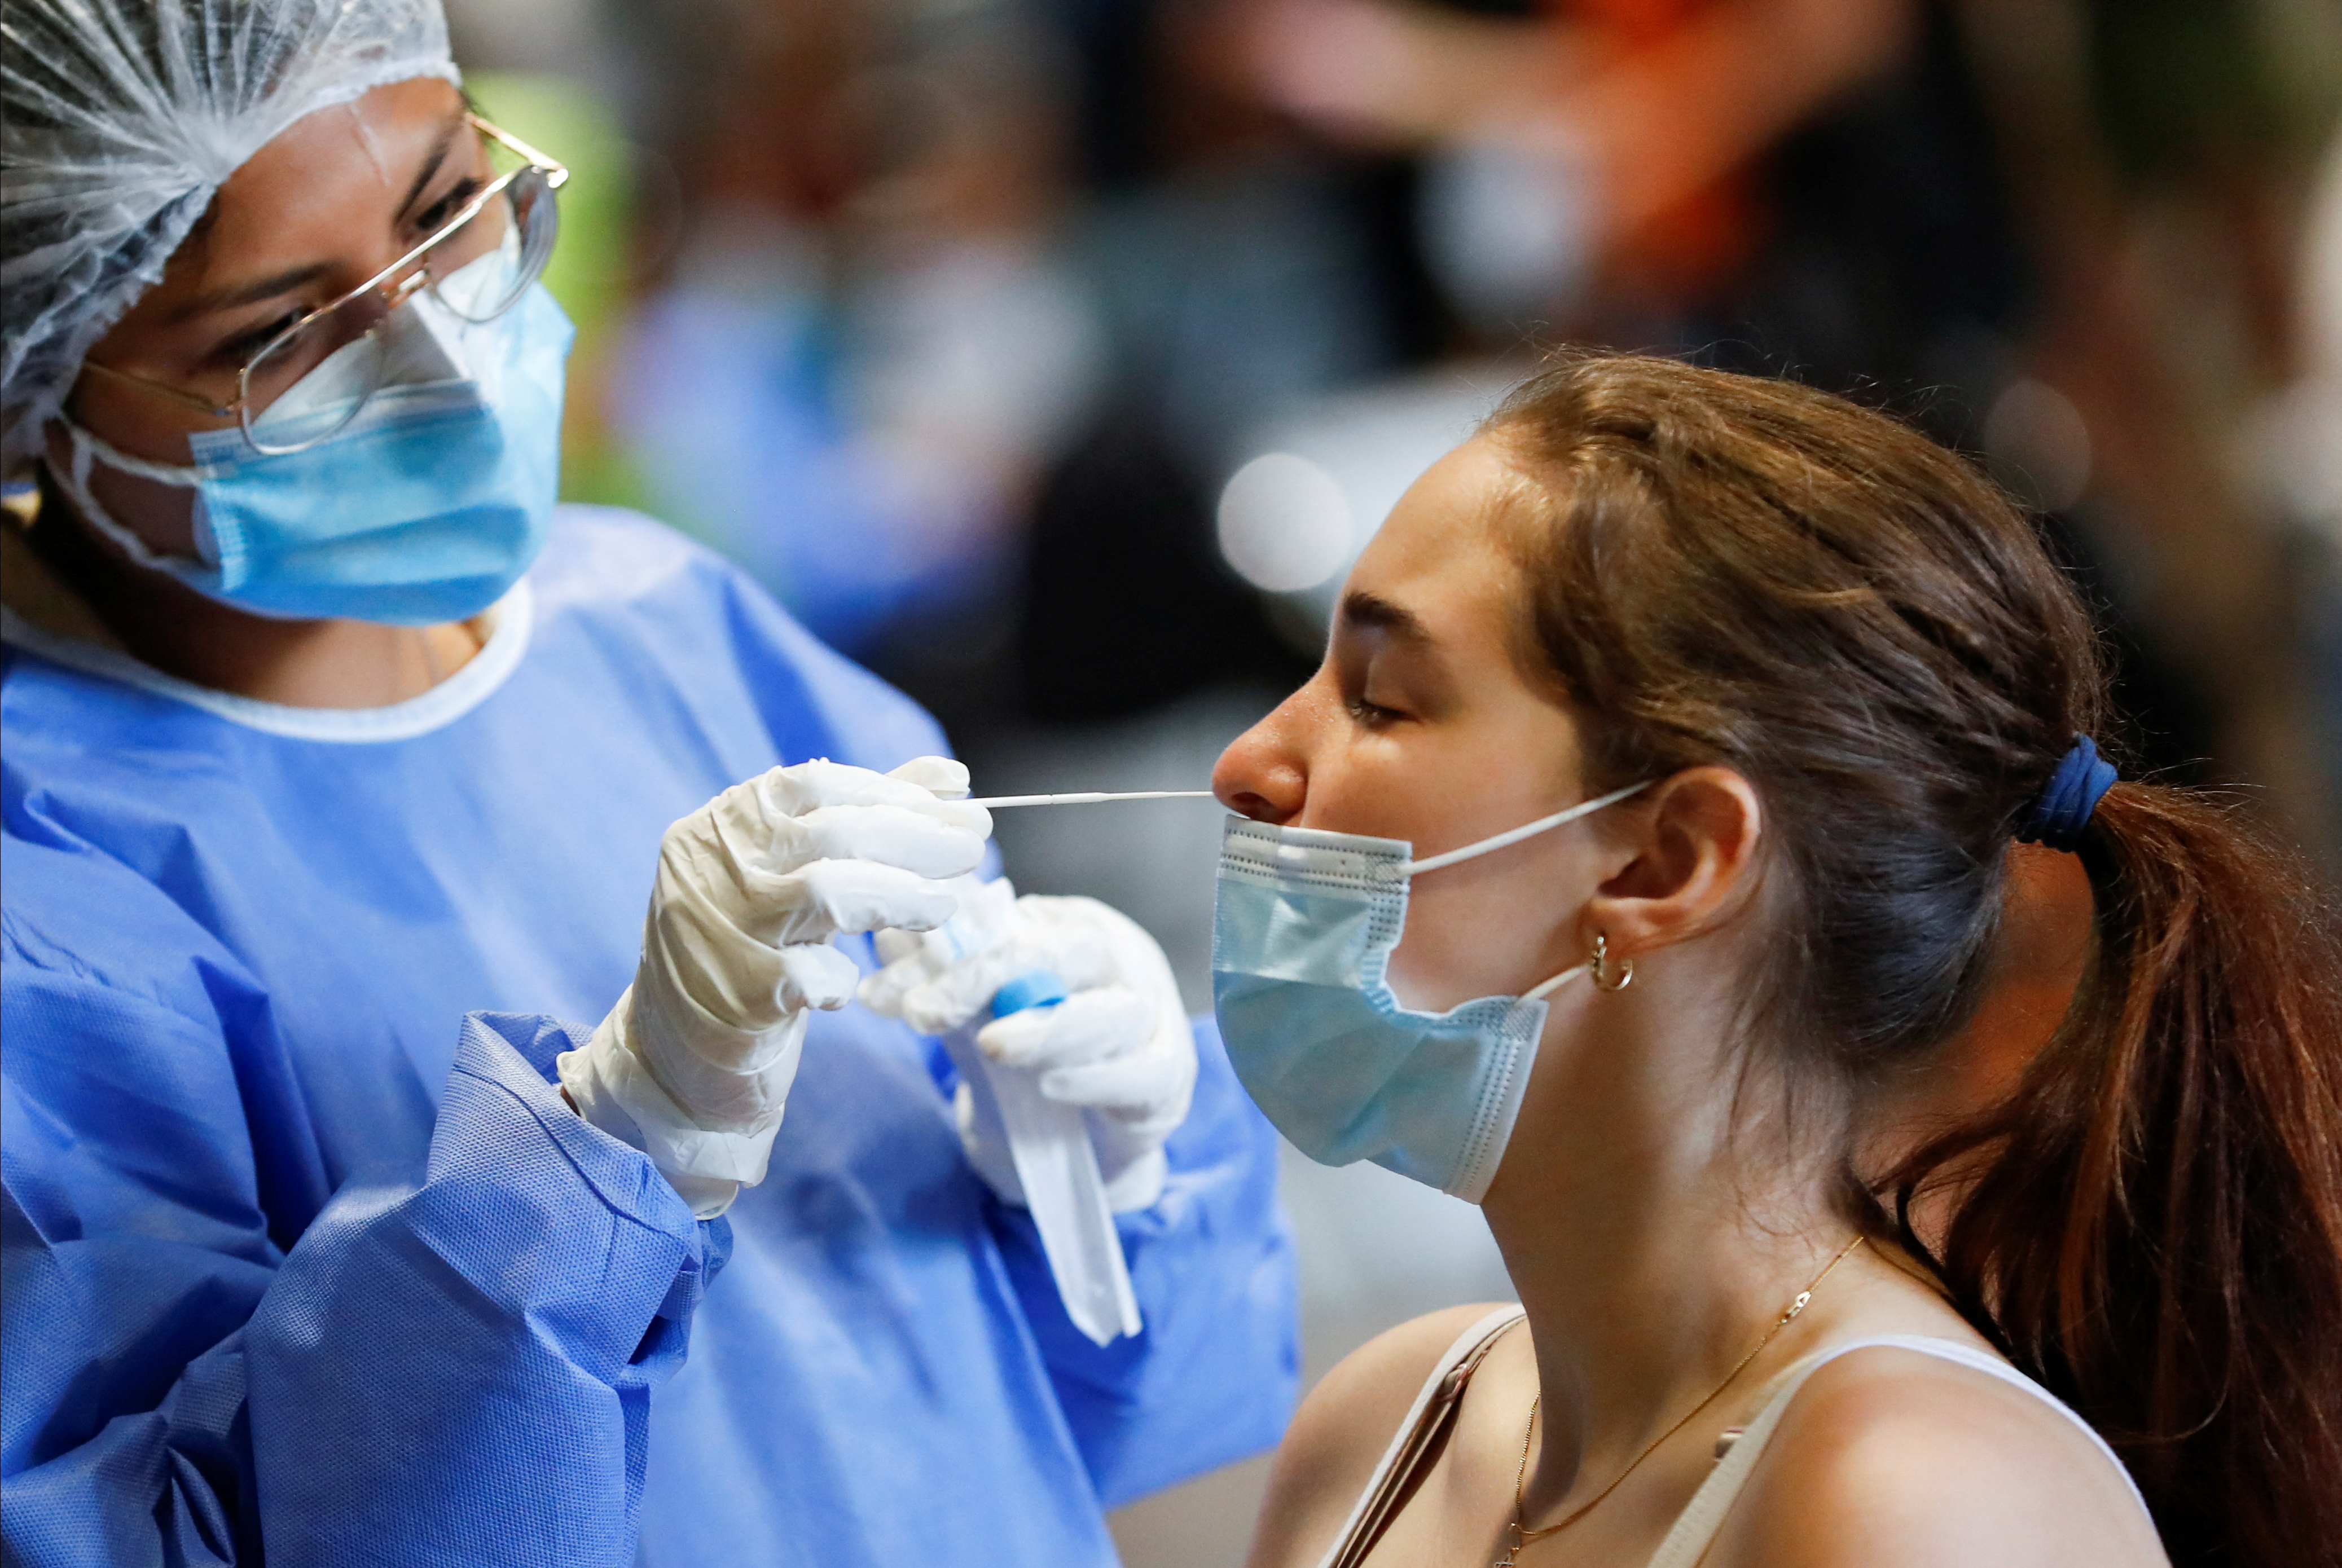 L'augmentation des infections se poursuit, selon le rapport COVID de cette semaine / REUTERS/Agustin Marcarian